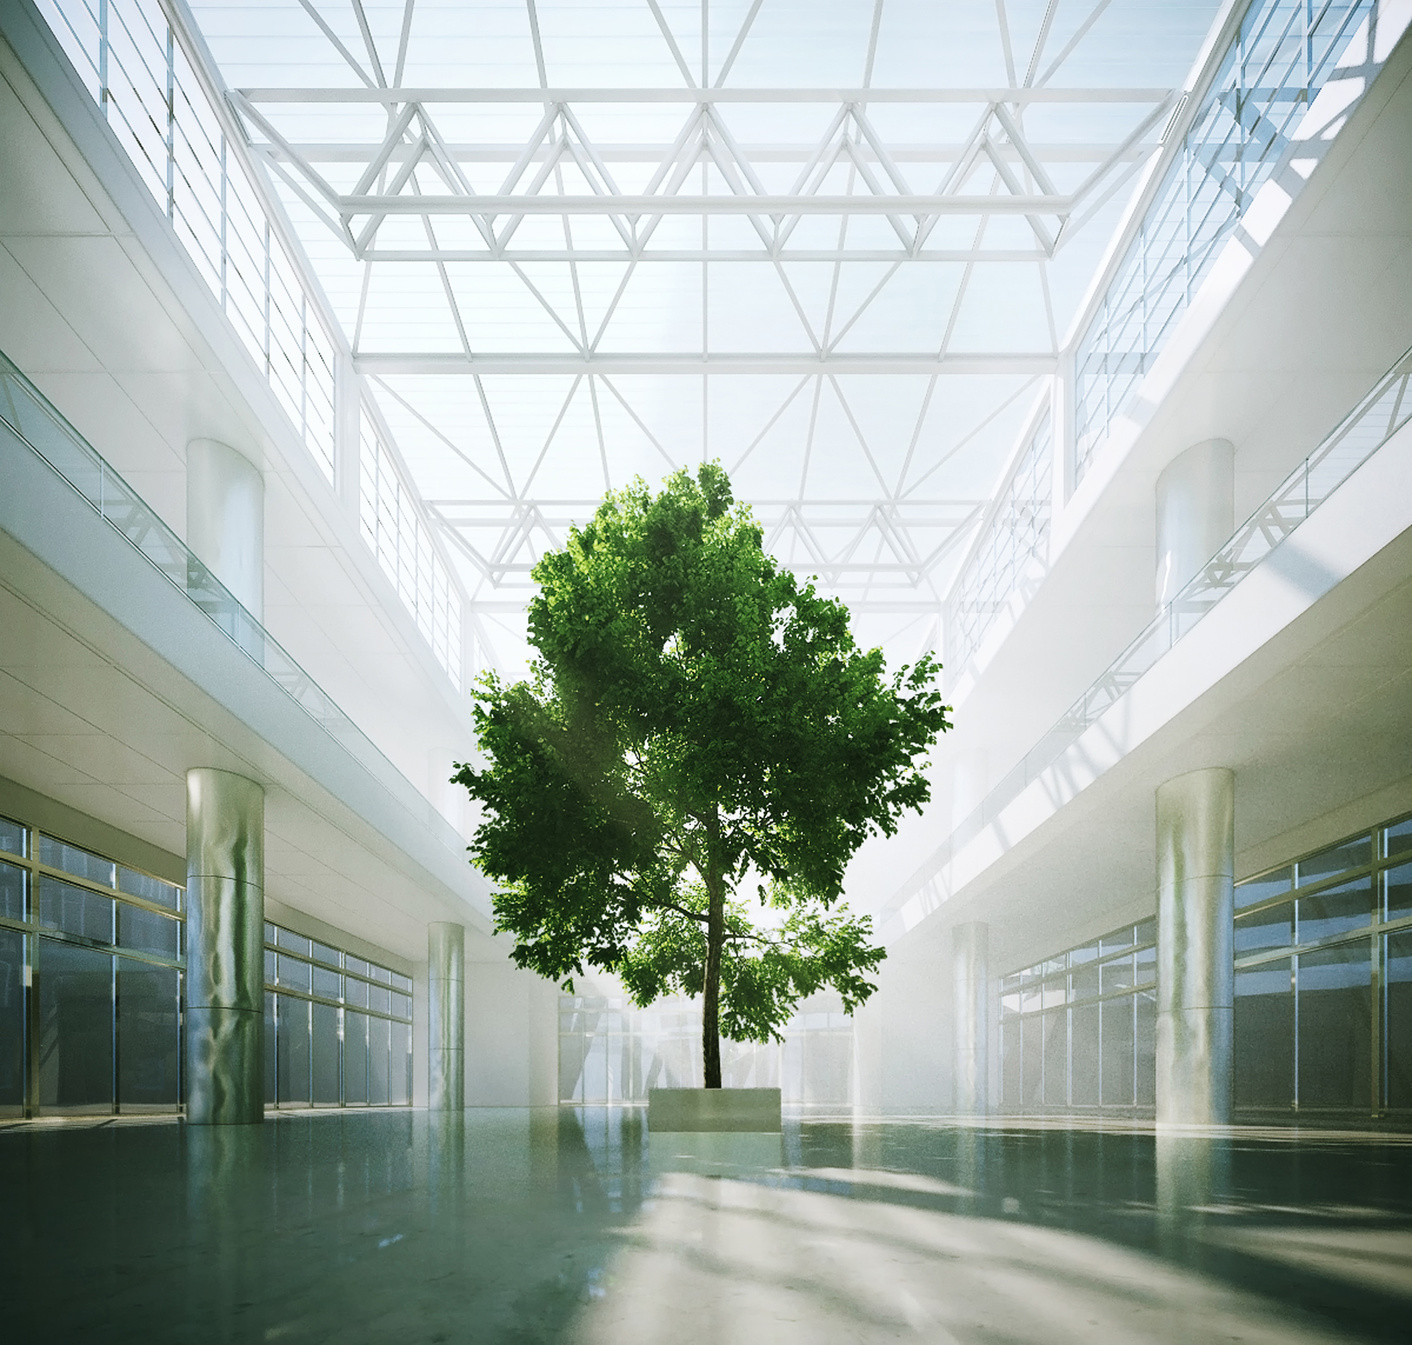 Zielone drzewo wewnątrz holu budynku - ilustracja dekoracyjna